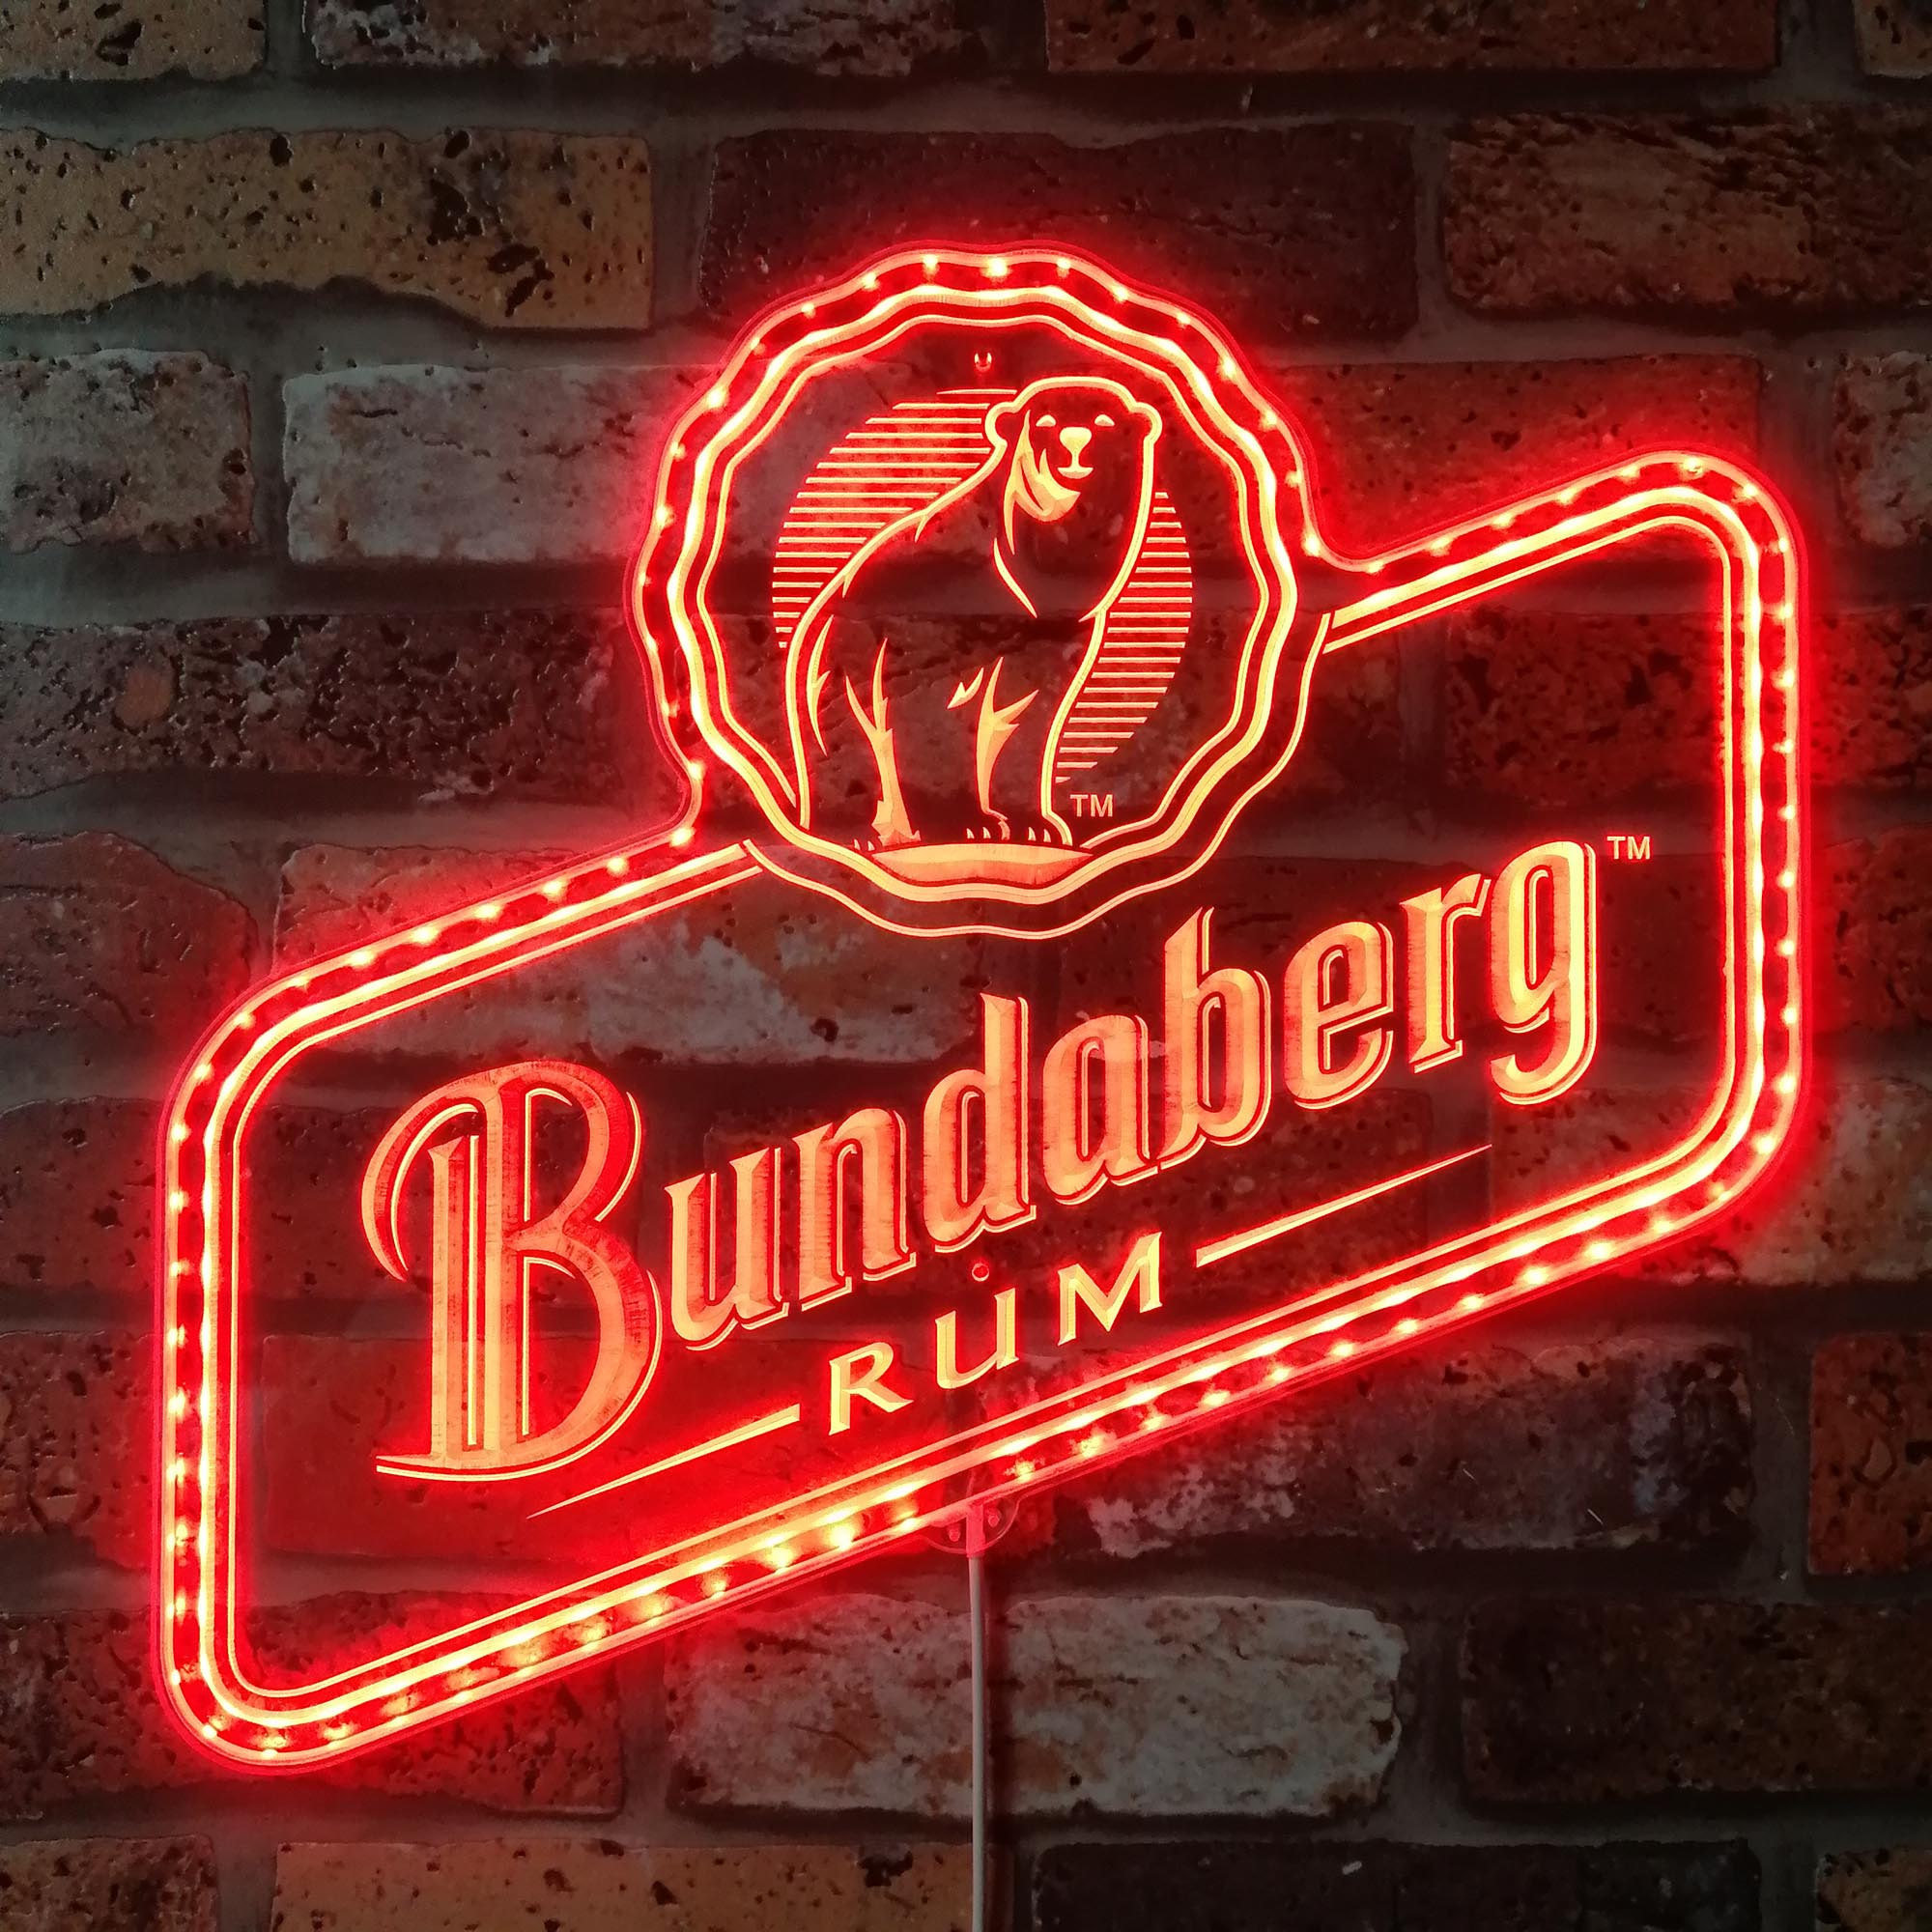 Bundaberg Rum Dynamic RGB Edge Lit LED Sign